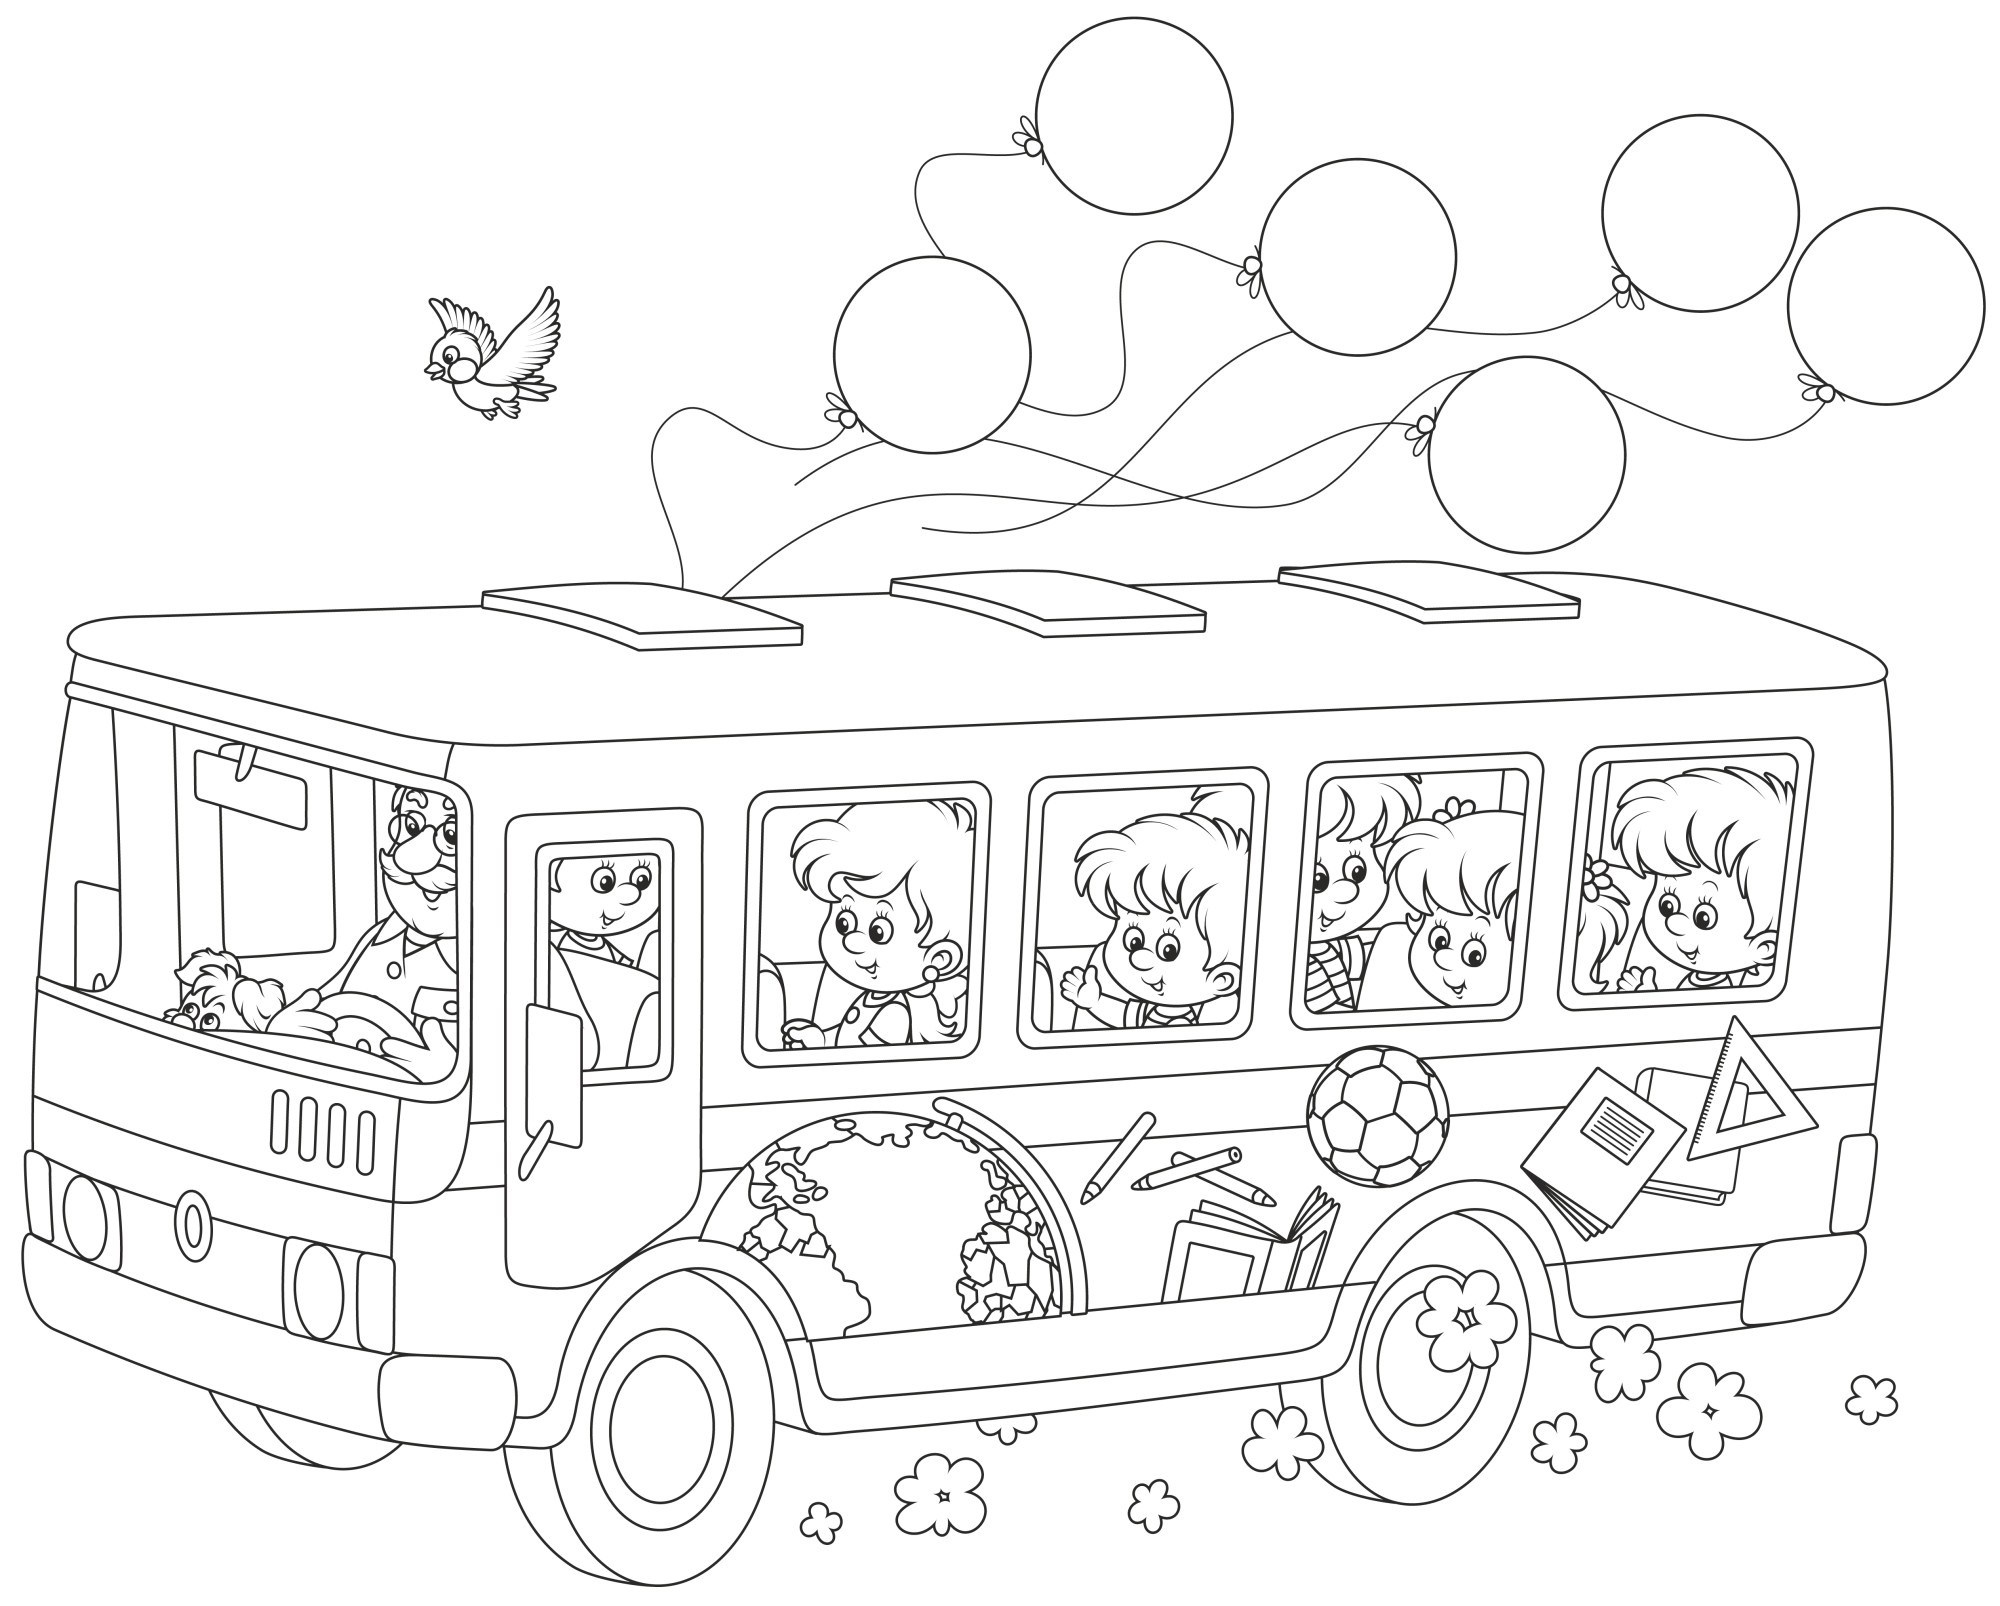 Раскраска для детей: школьный автобус с детьми и воздушными шариками